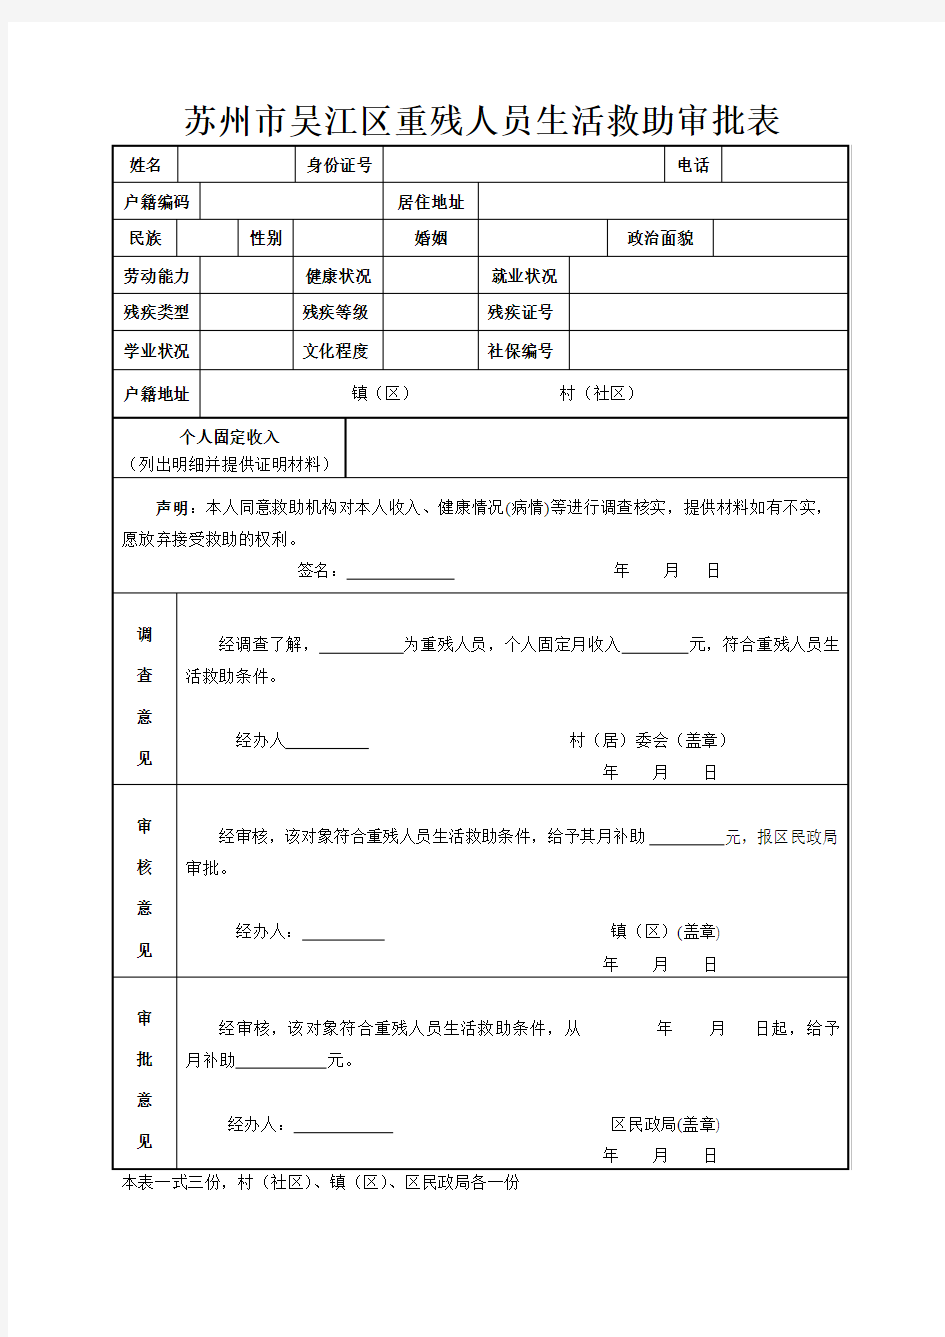 苏州市吴江区重残人员生活救助审批表(2014年6月)